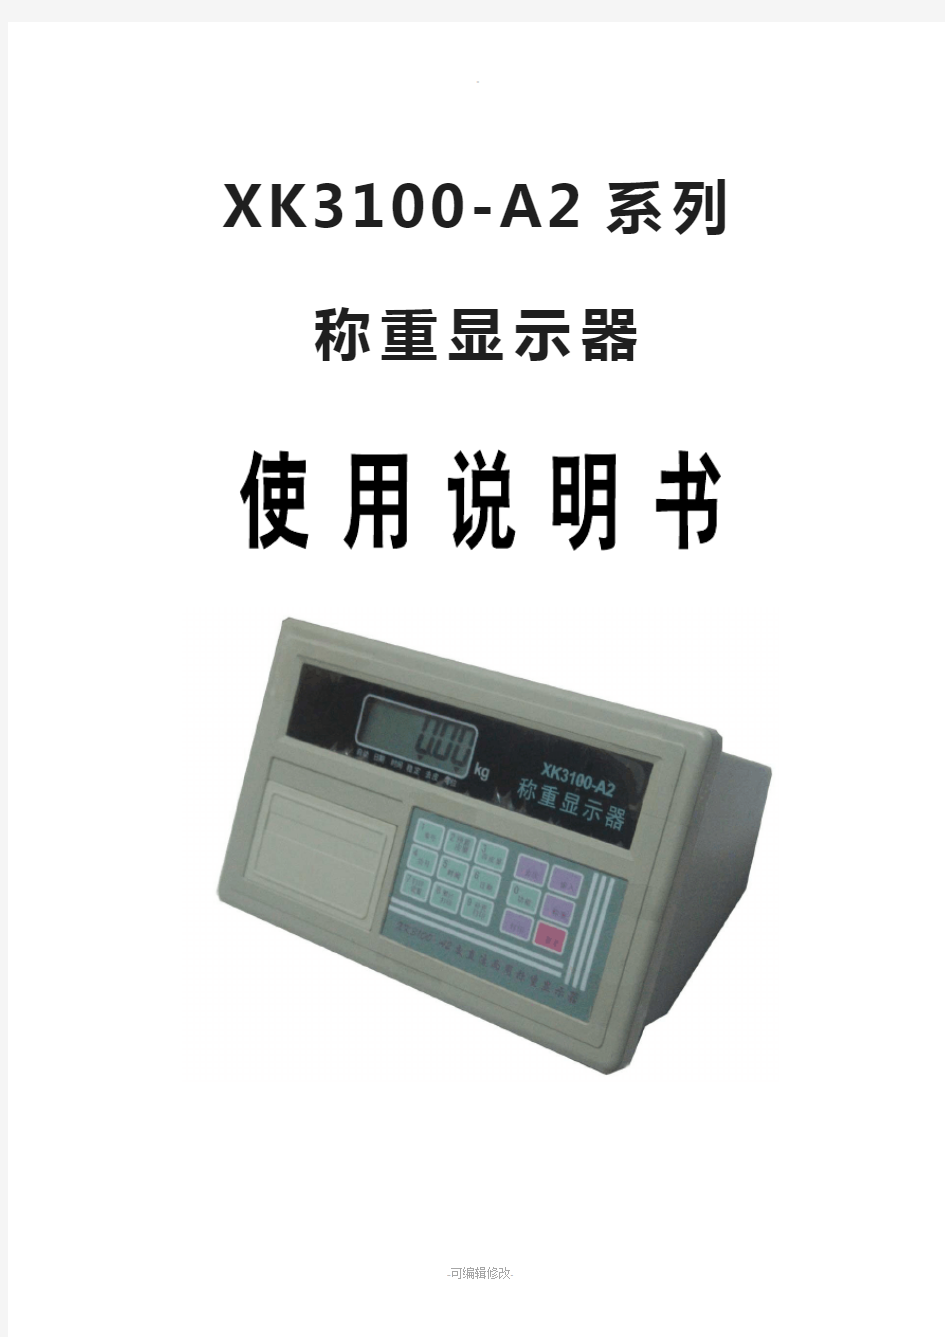 说明书-XK3100-A2系列称重显示器使用说明书